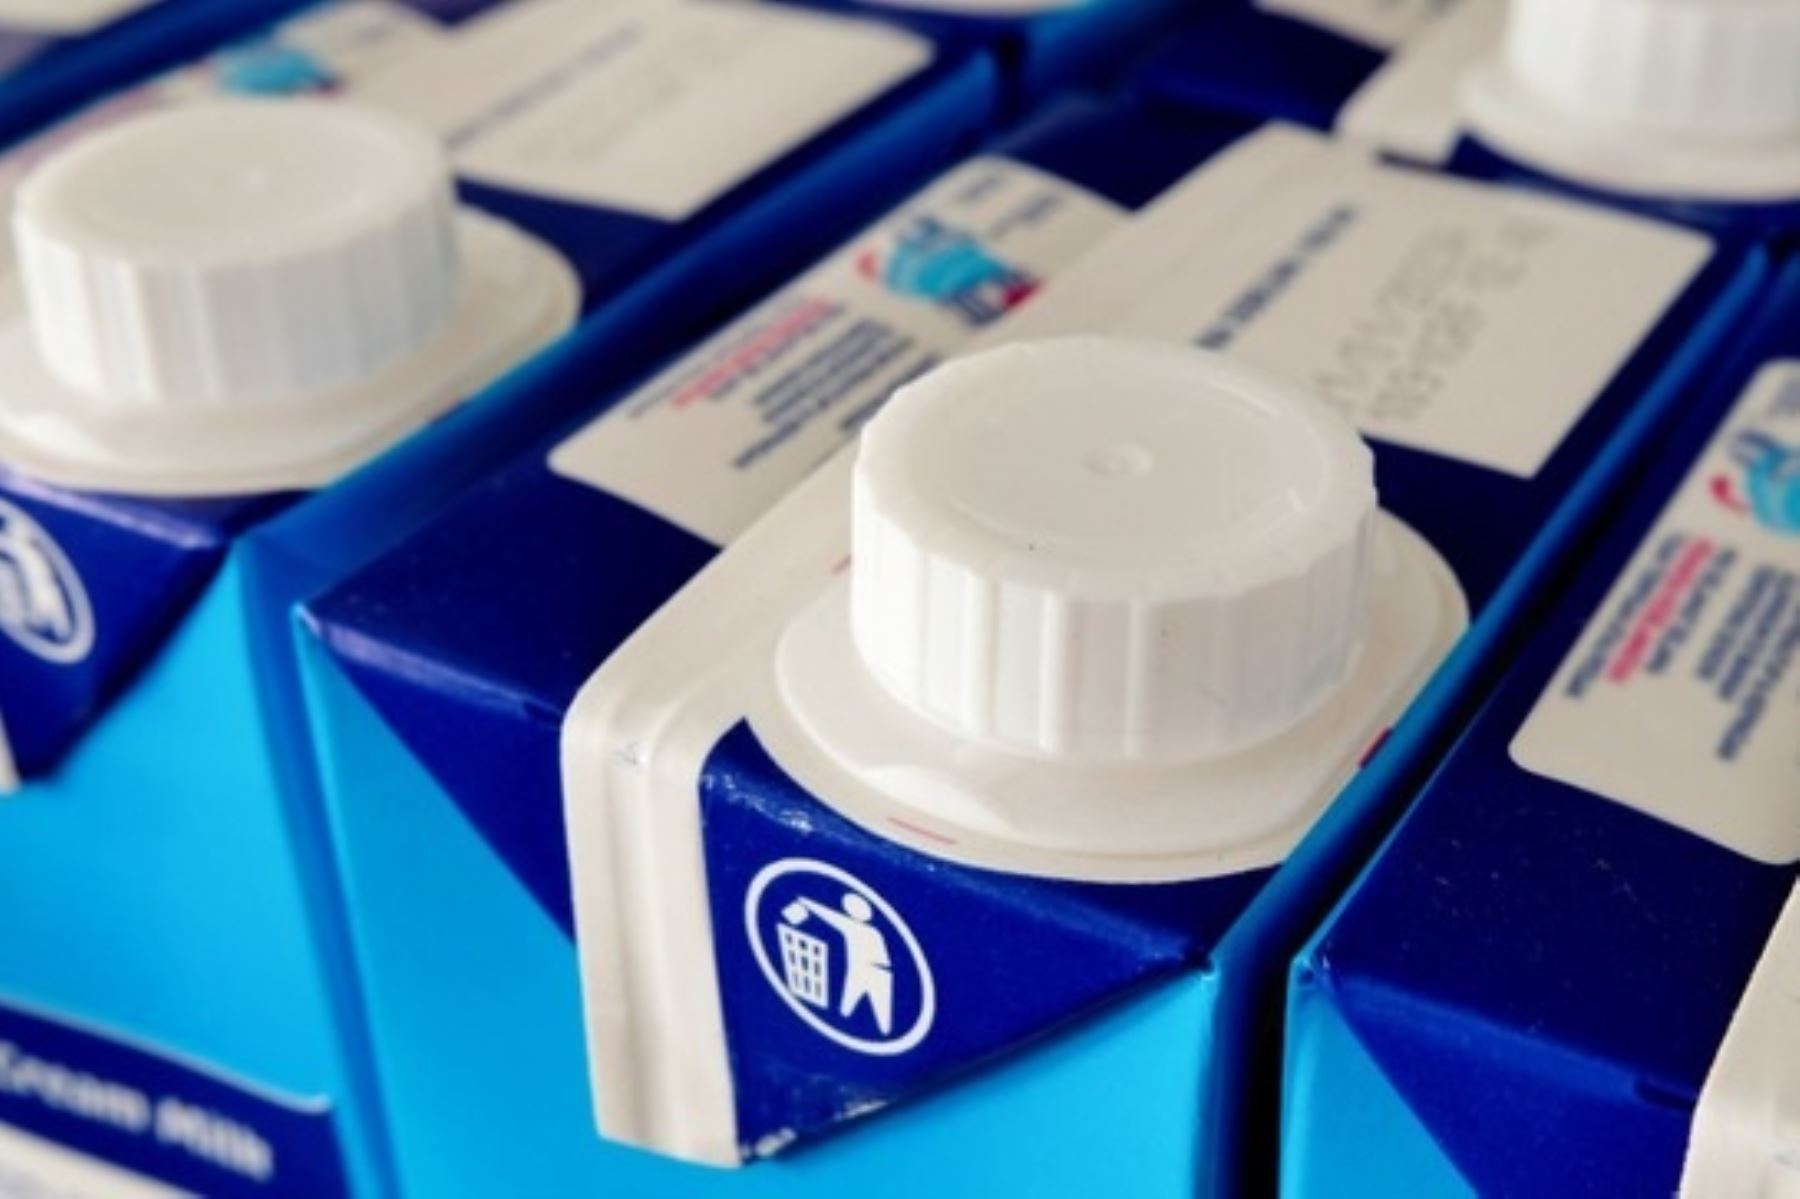 Productos “Bonlé familiar” e “Ideal Amanecer” no deben venderse como leche, señala el Poder Judicial, ratificando sanción impuesta por Indecopi. Foto: Cortesía.